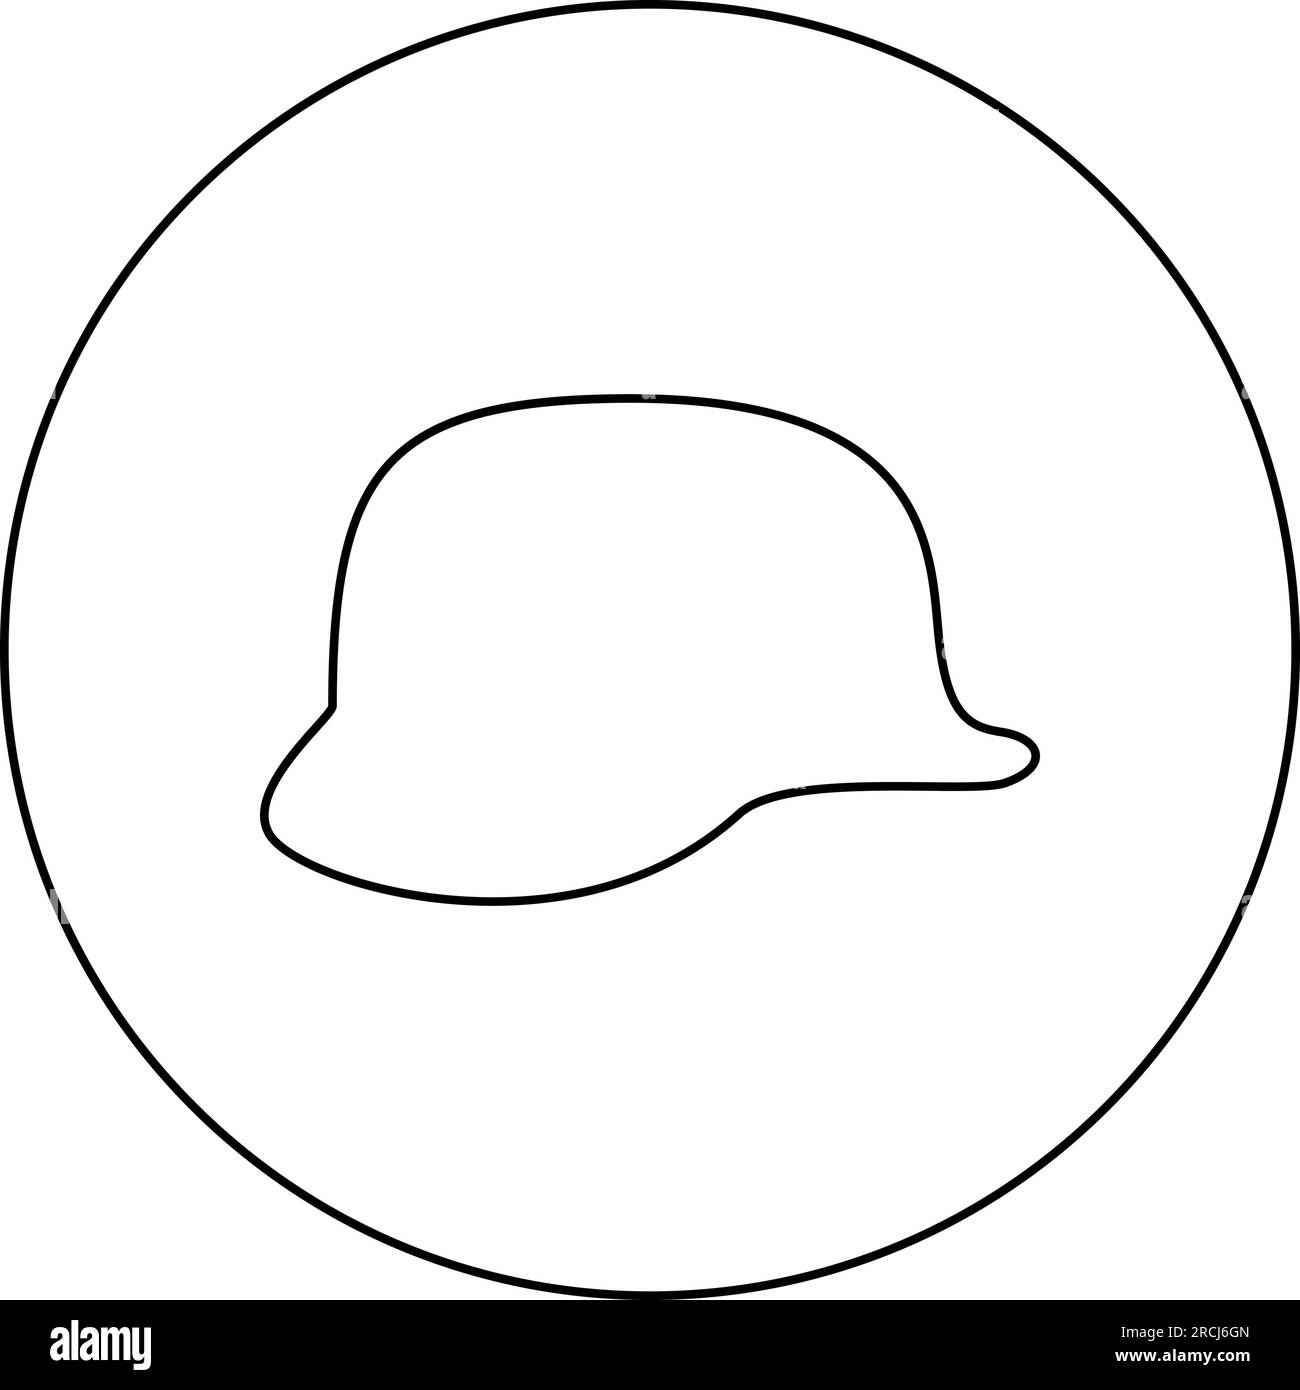 Casque allemand de la Seconde Guerre mondiale 2 stahlhelm ww2 icône en cercle rond couleur noire illustration vectorielle image contour ligne contour fin style simple Illustration de Vecteur